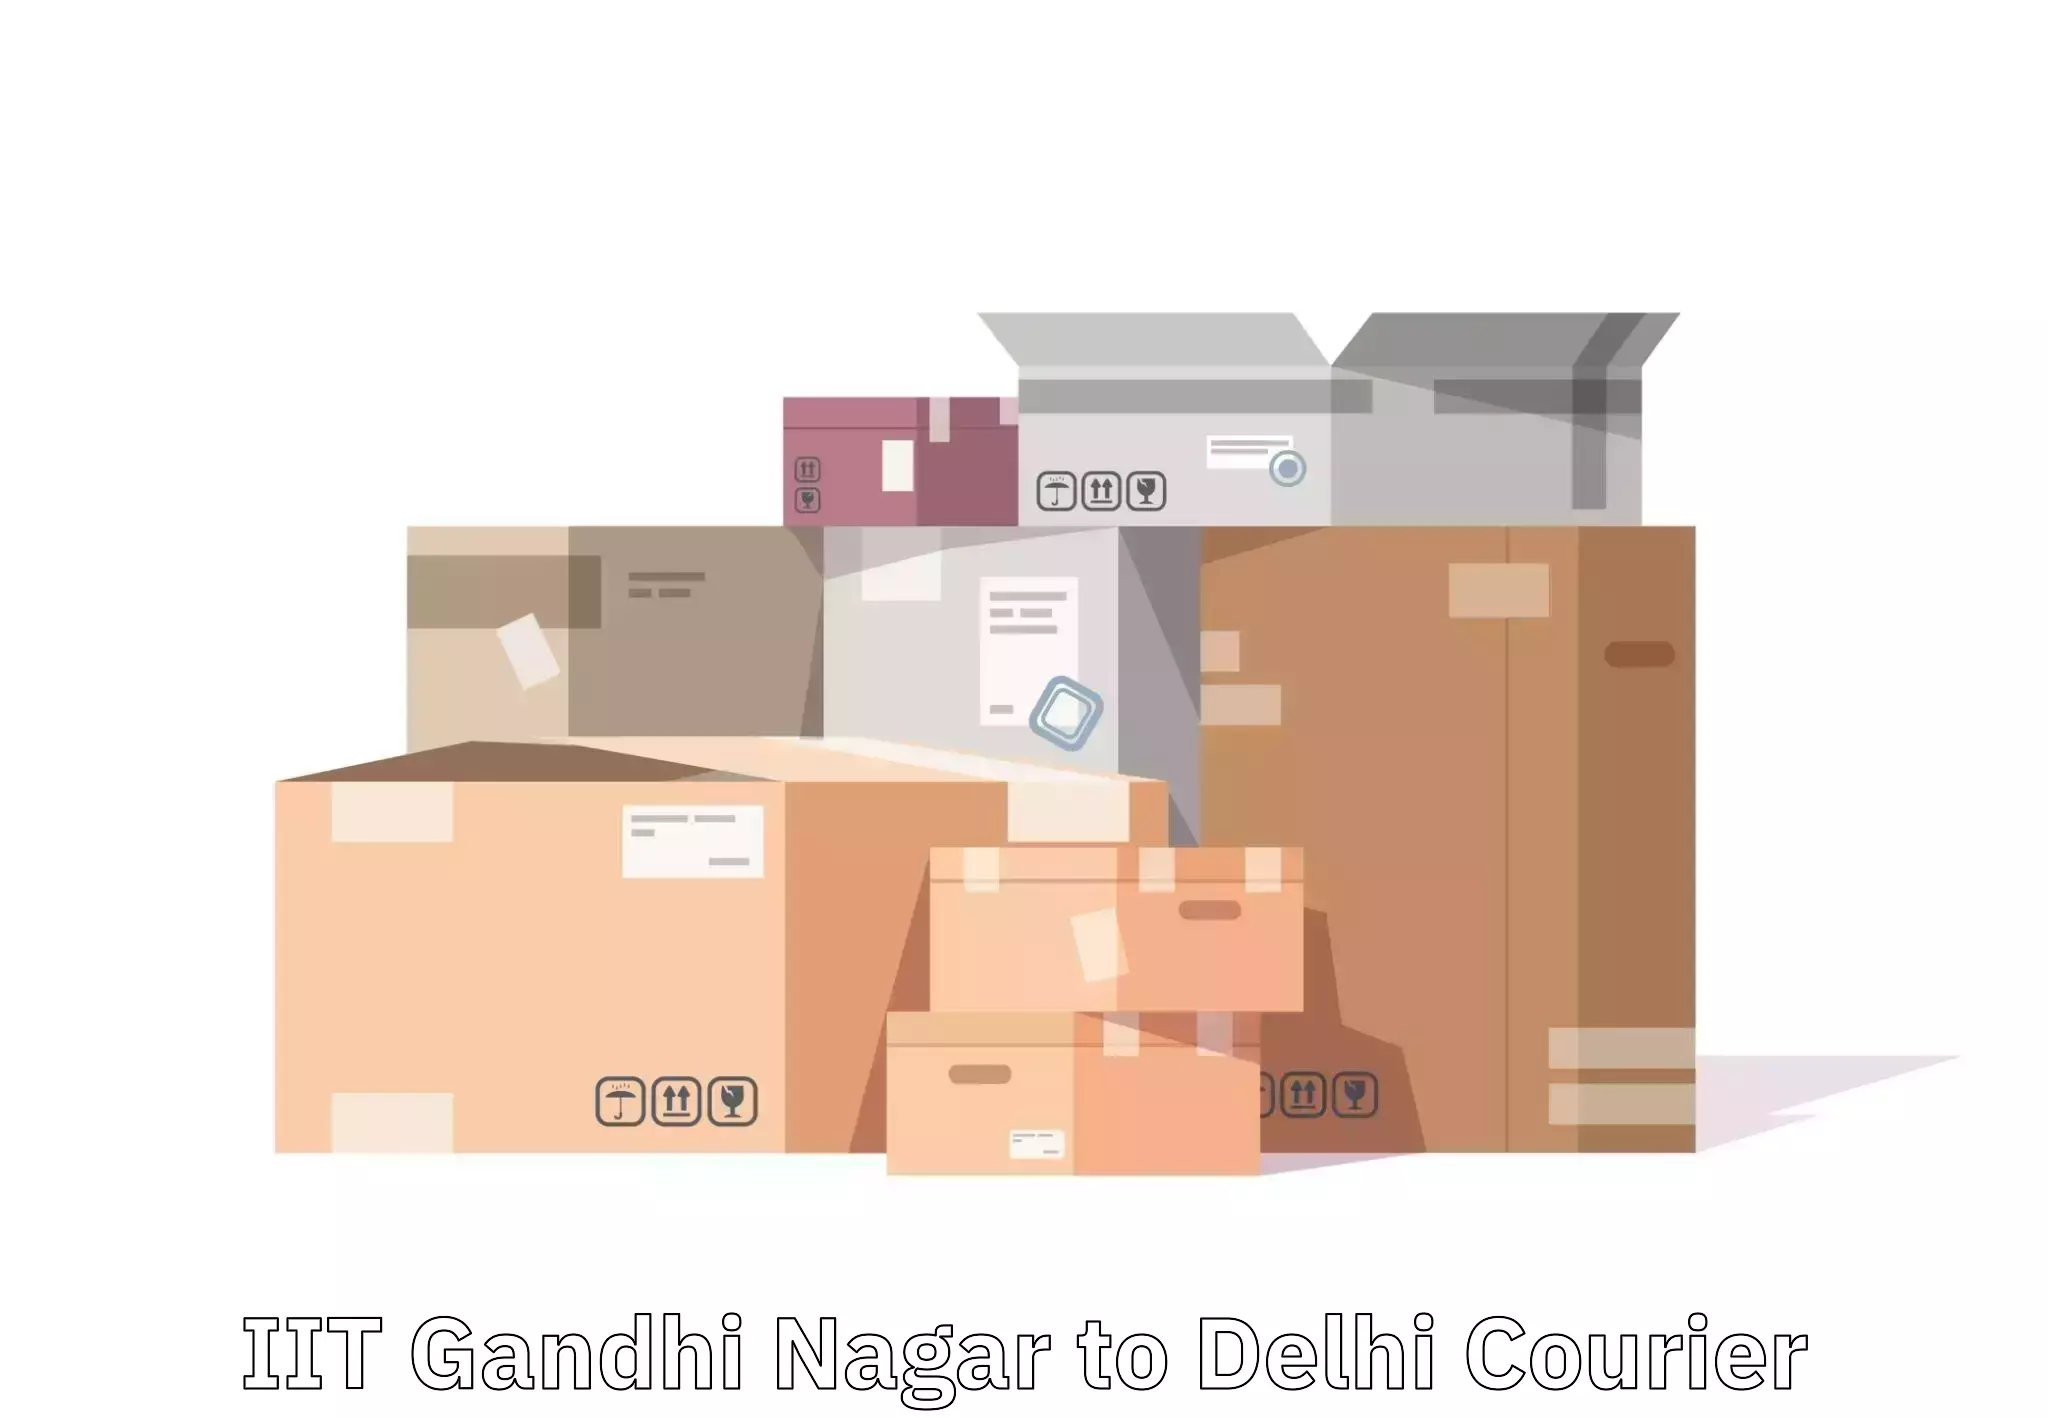 Baggage shipping quotes IIT Gandhi Nagar to Lodhi Road